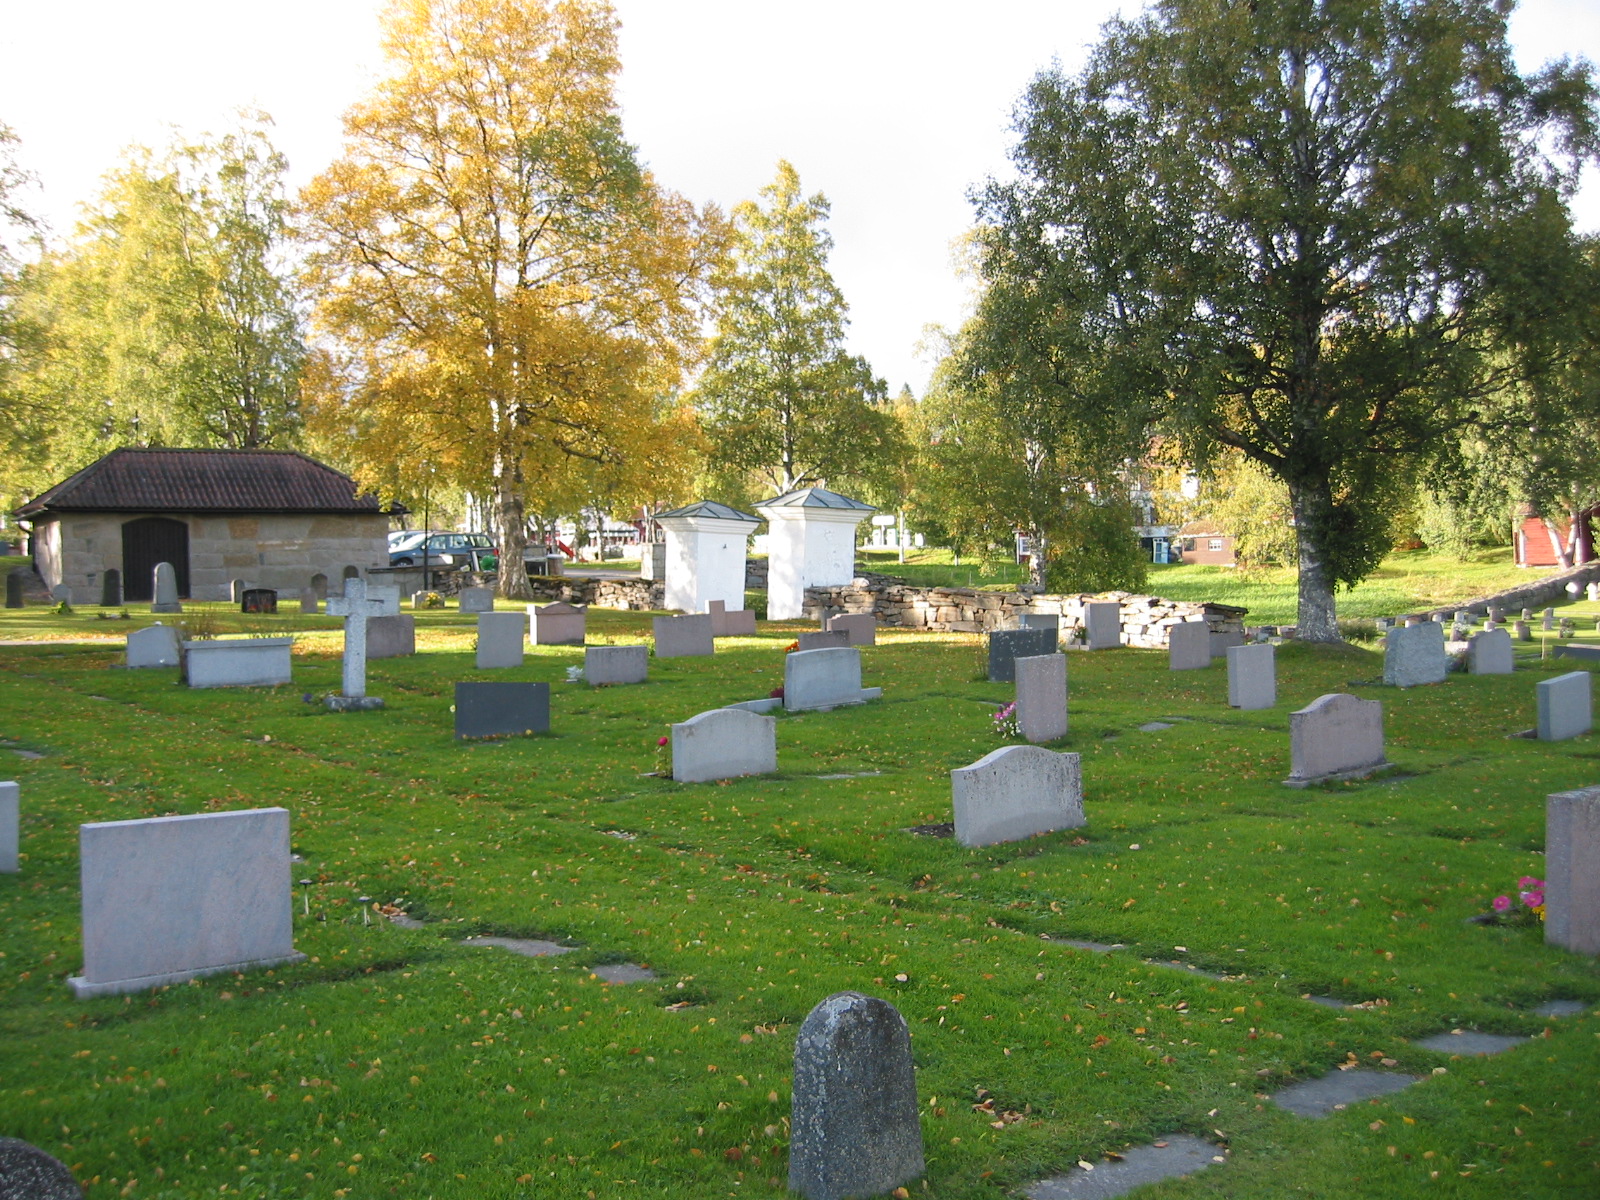 Kalls kyrkas kyrkogård, norra delen av kyrkogården vid entrén med bårhuset längst bort.

Strax norr om kyrkan ligger ett bårhus, antagligen byggt på 1950-talet, av murad huggen kalksten. 